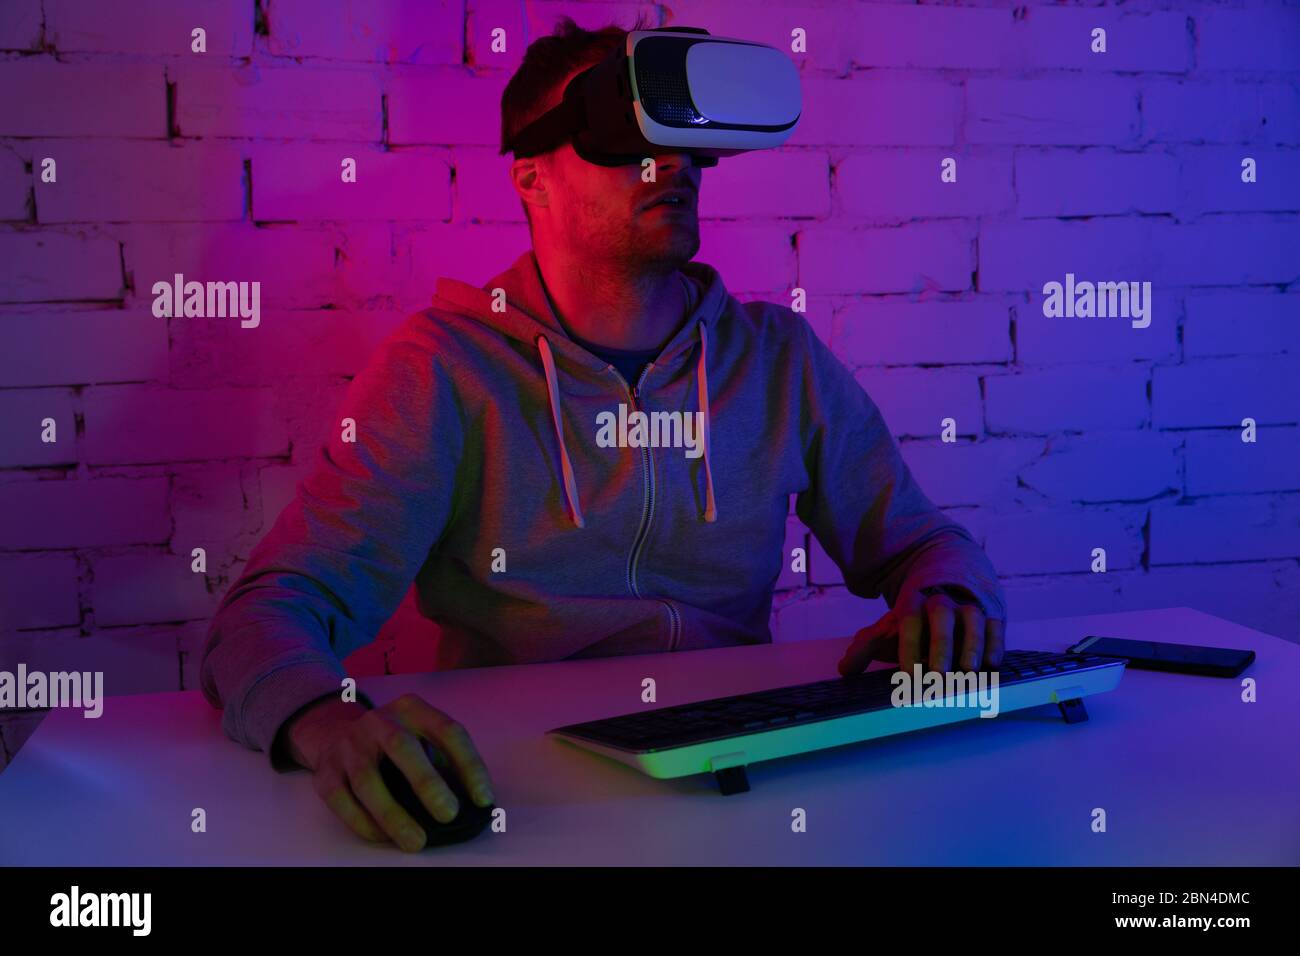 Juego VR: Hombre jugando a videojuegos con auriculares de realidad virtual en la habitación con iluminación de neón Foto de stock